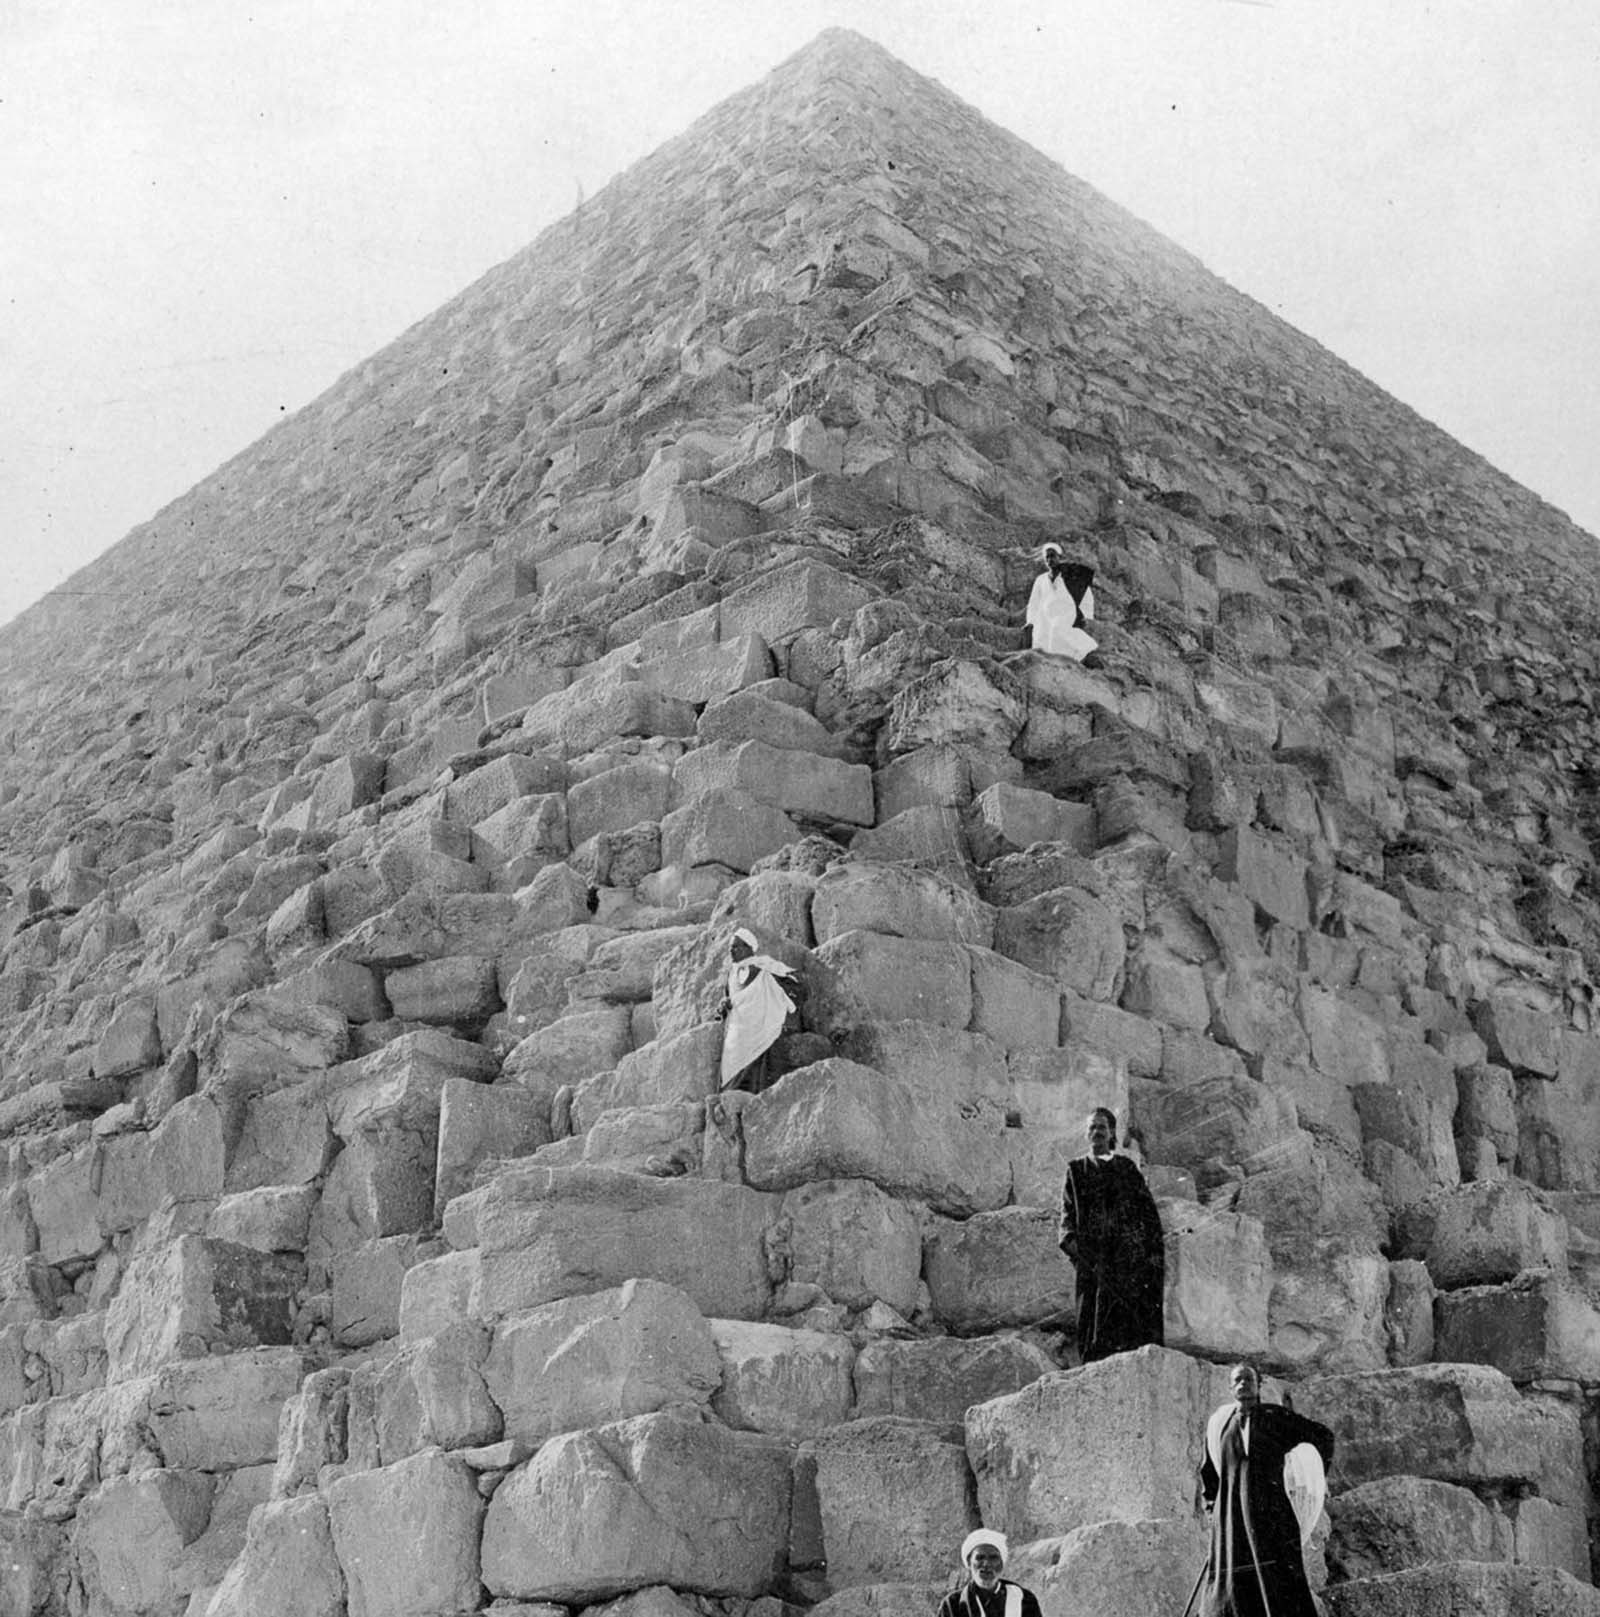 Premiers touristes visitant les pyramides et les ruines de l'Égypte ancienne, 1860-1930